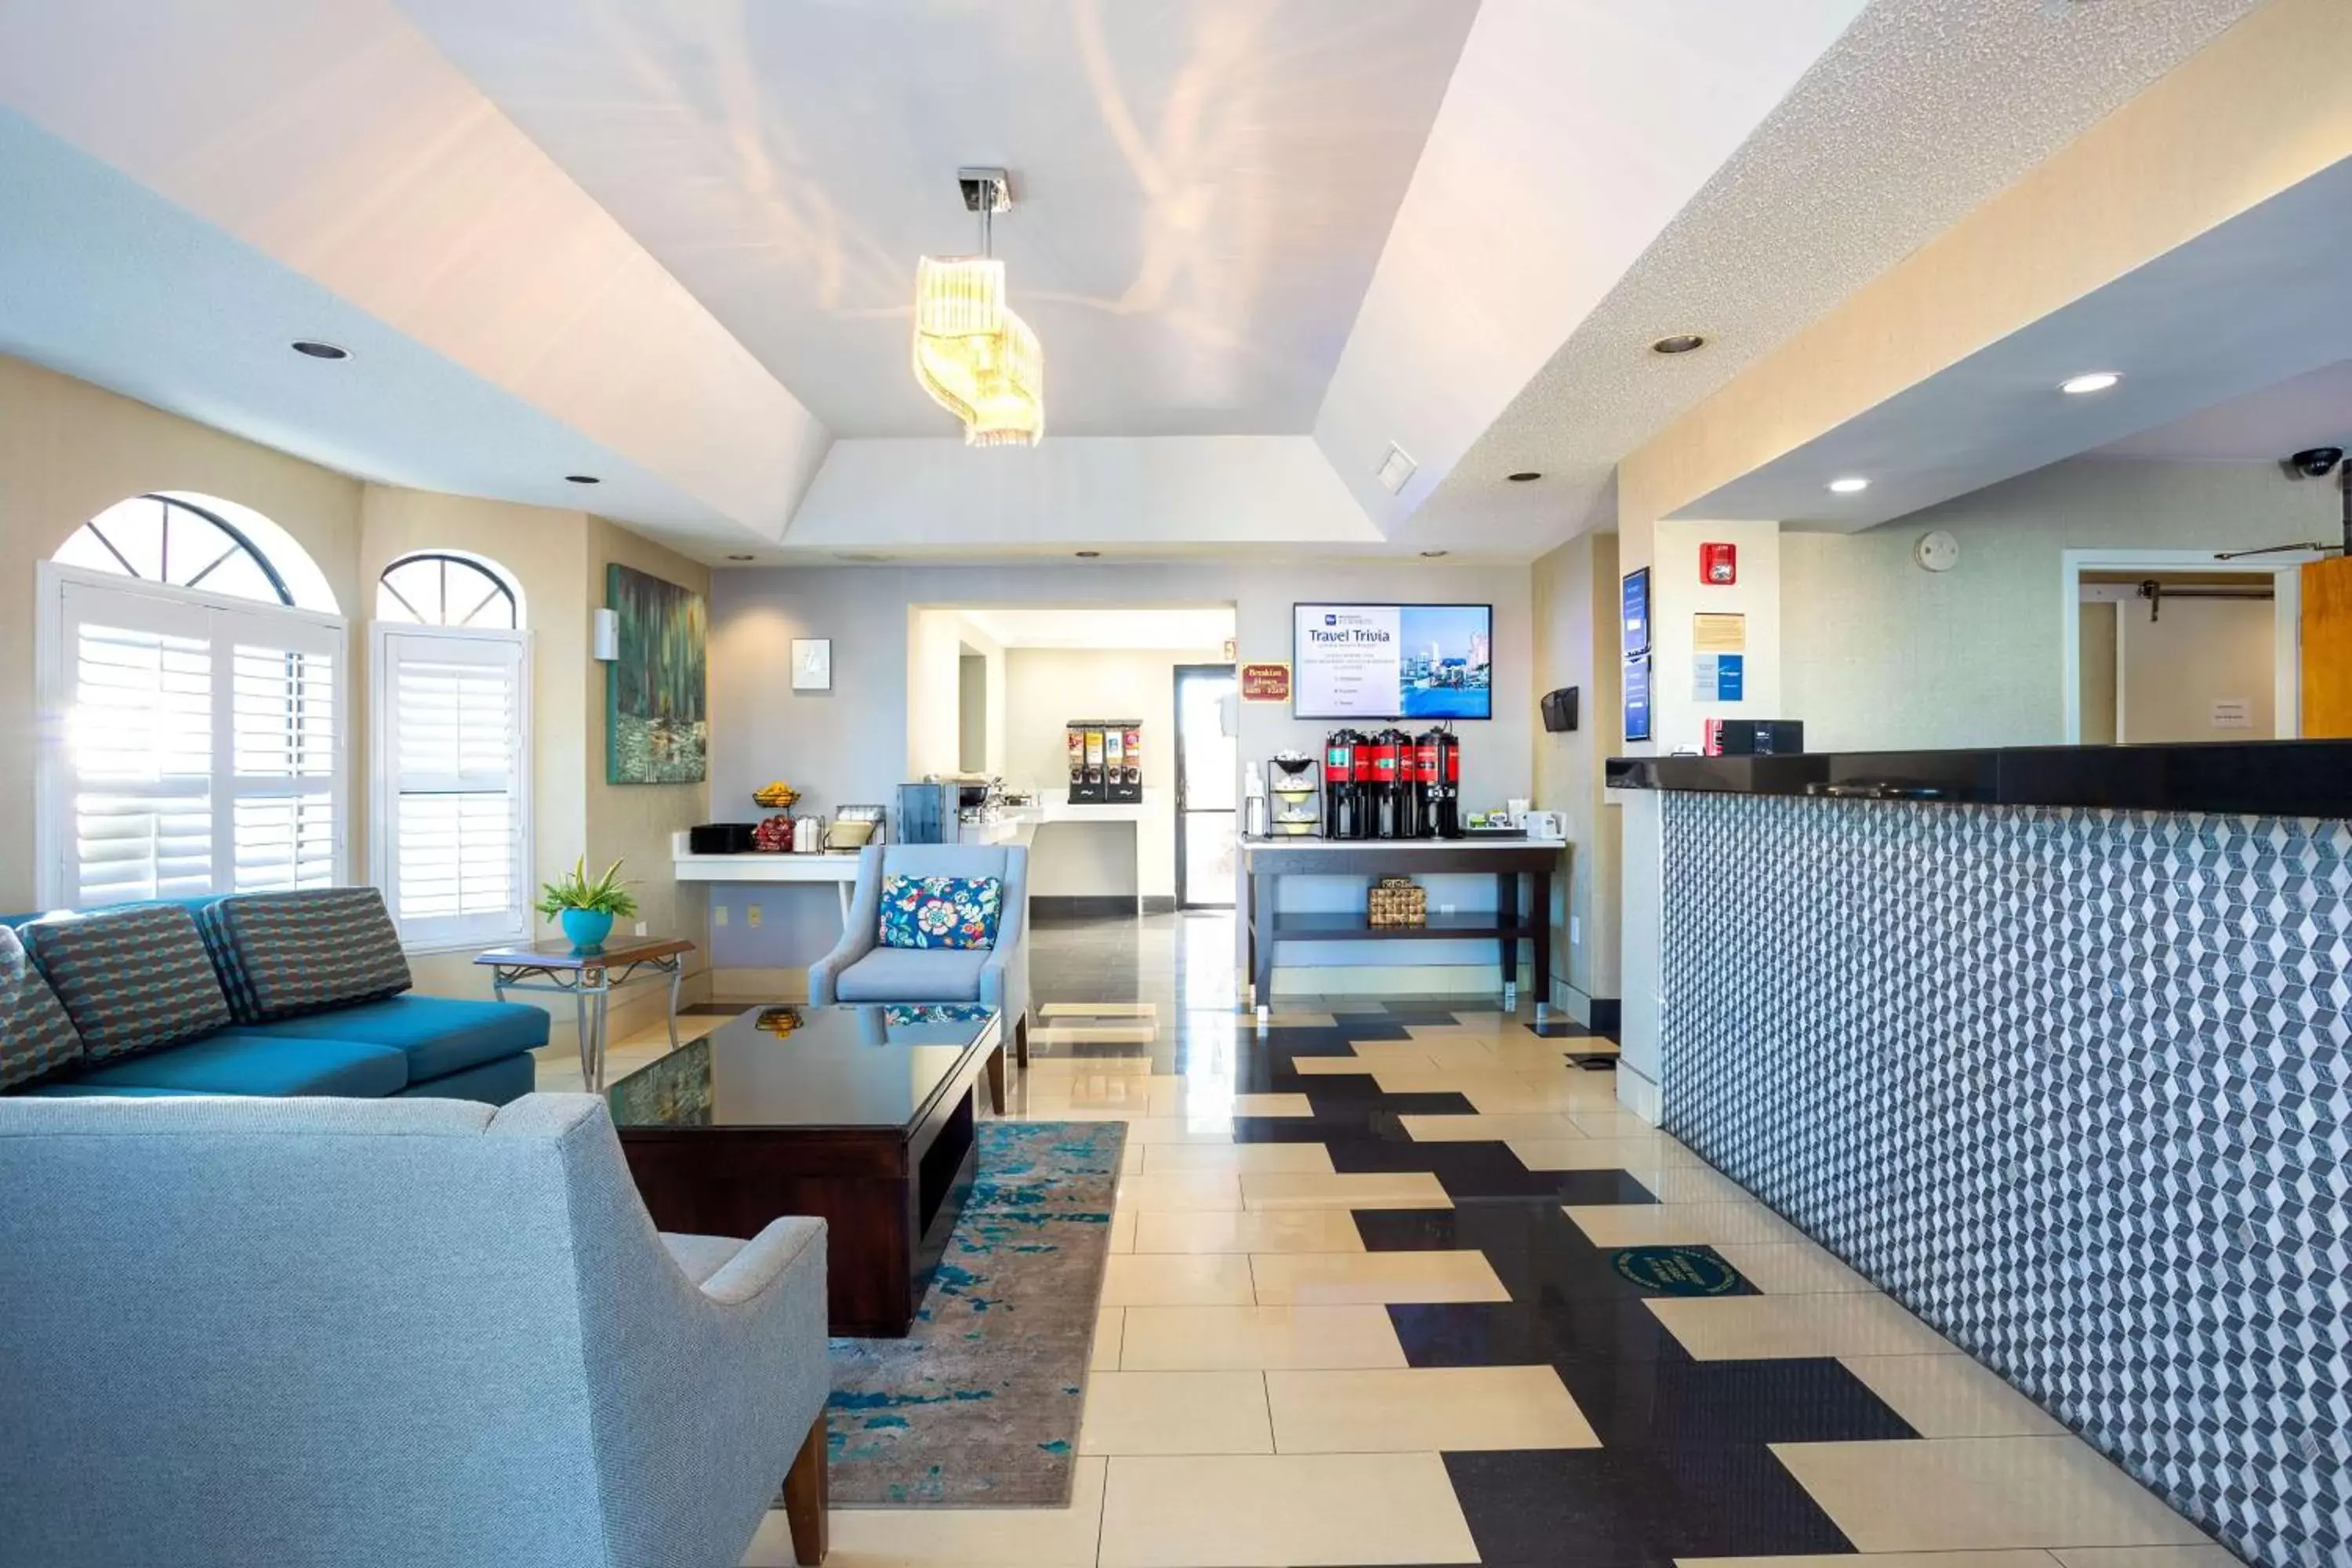 Lobby or reception, Lobby/Reception in Best Western St. Augustine Beach Inn